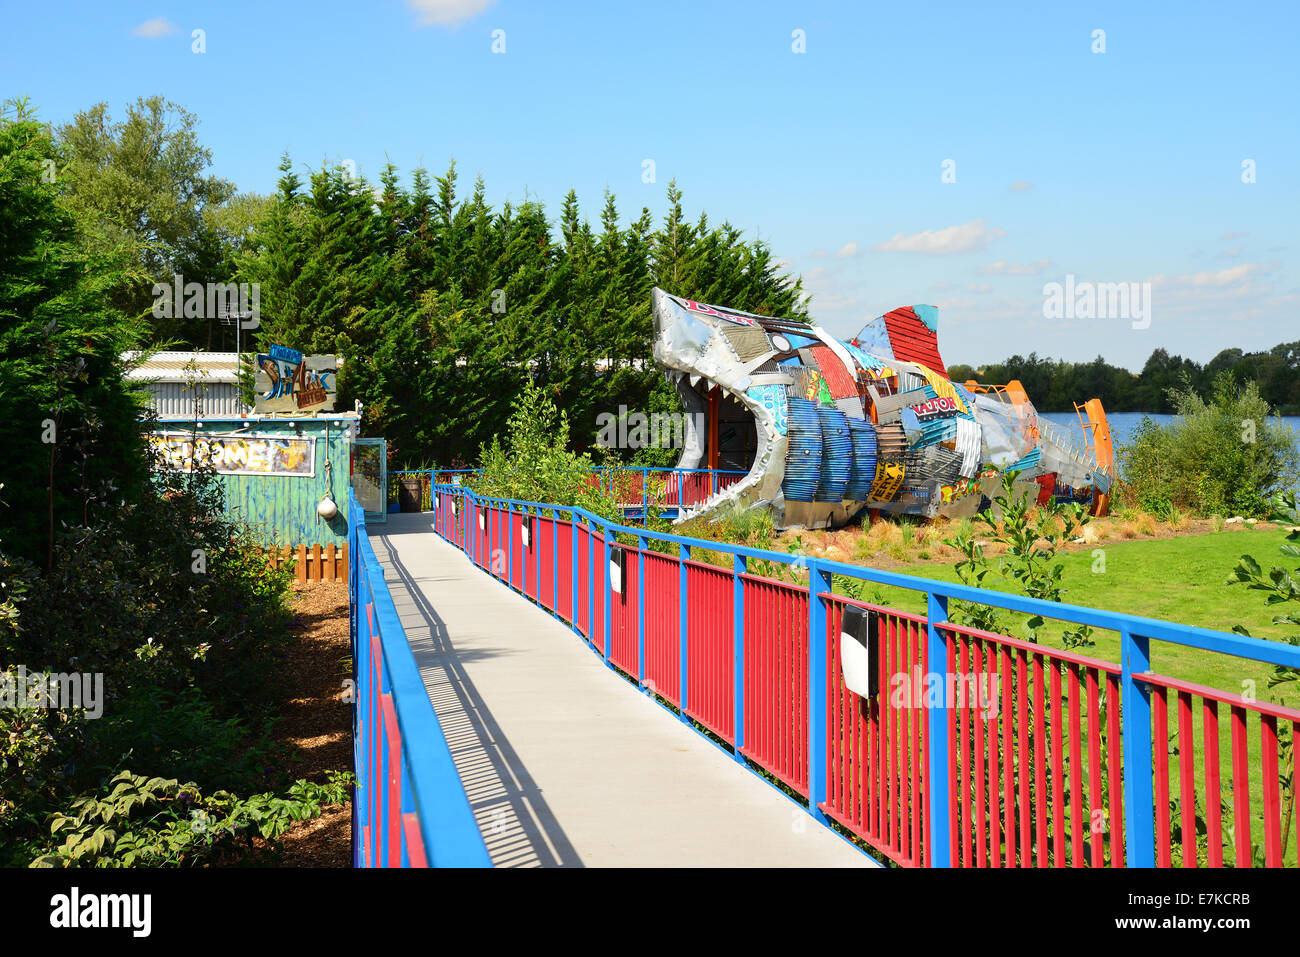 Ingresso passerella per lo squalo Hotel, Thorpe Park Theme Park, Chertsey, Surrey, England, Regno Unito Foto Stock